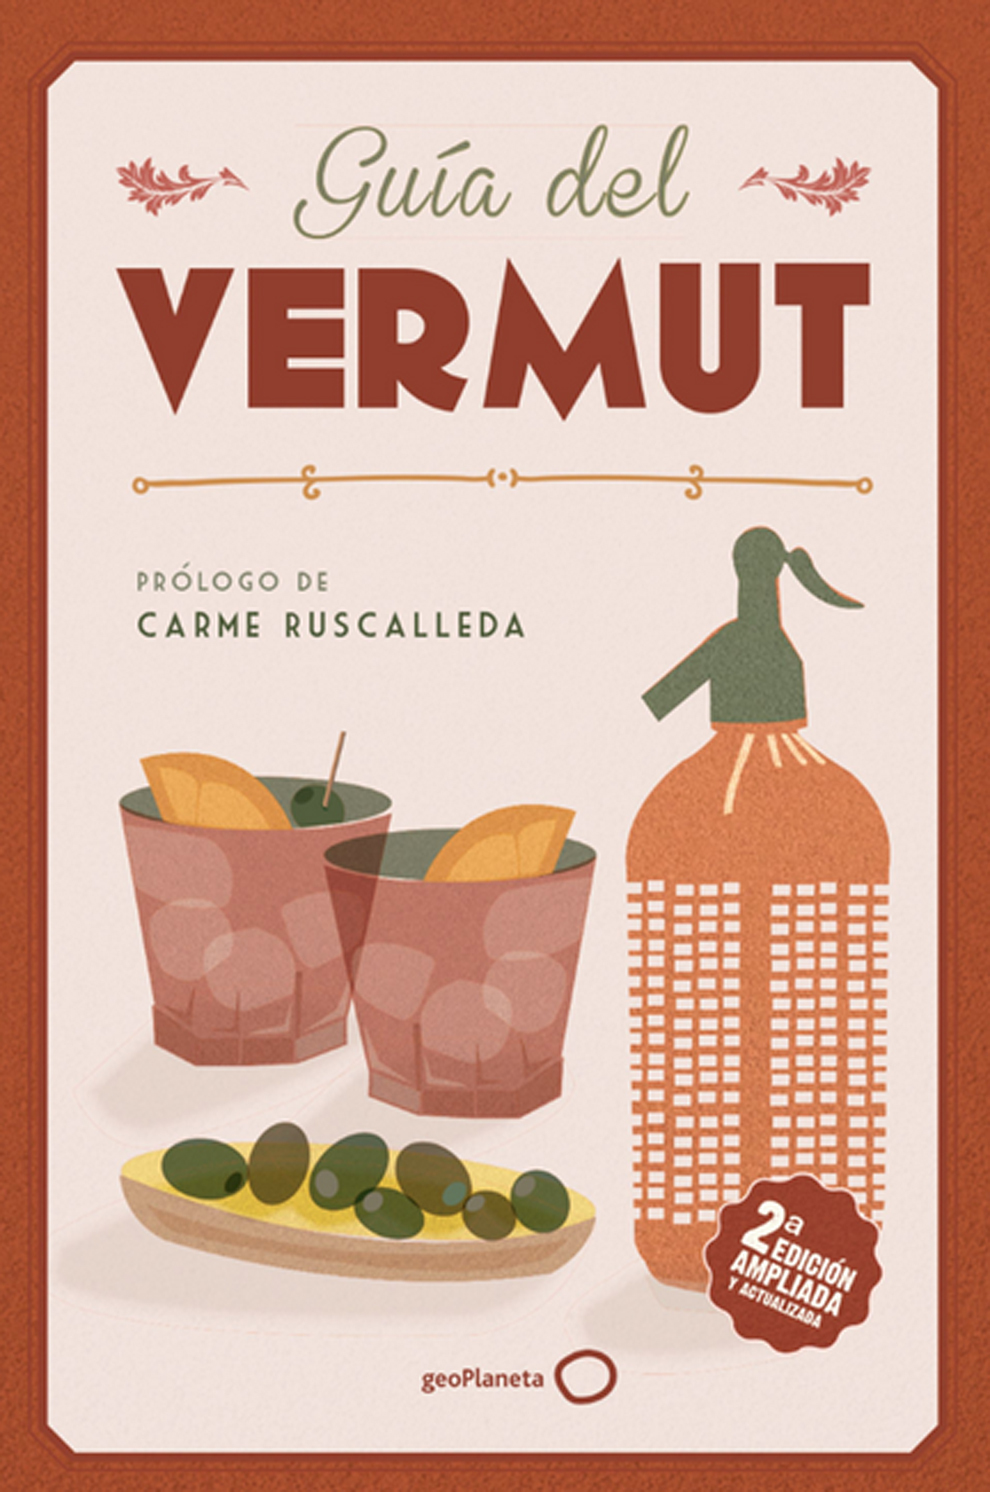 'Guía del Vermut', recetas gastronómicas, listado de locales de un